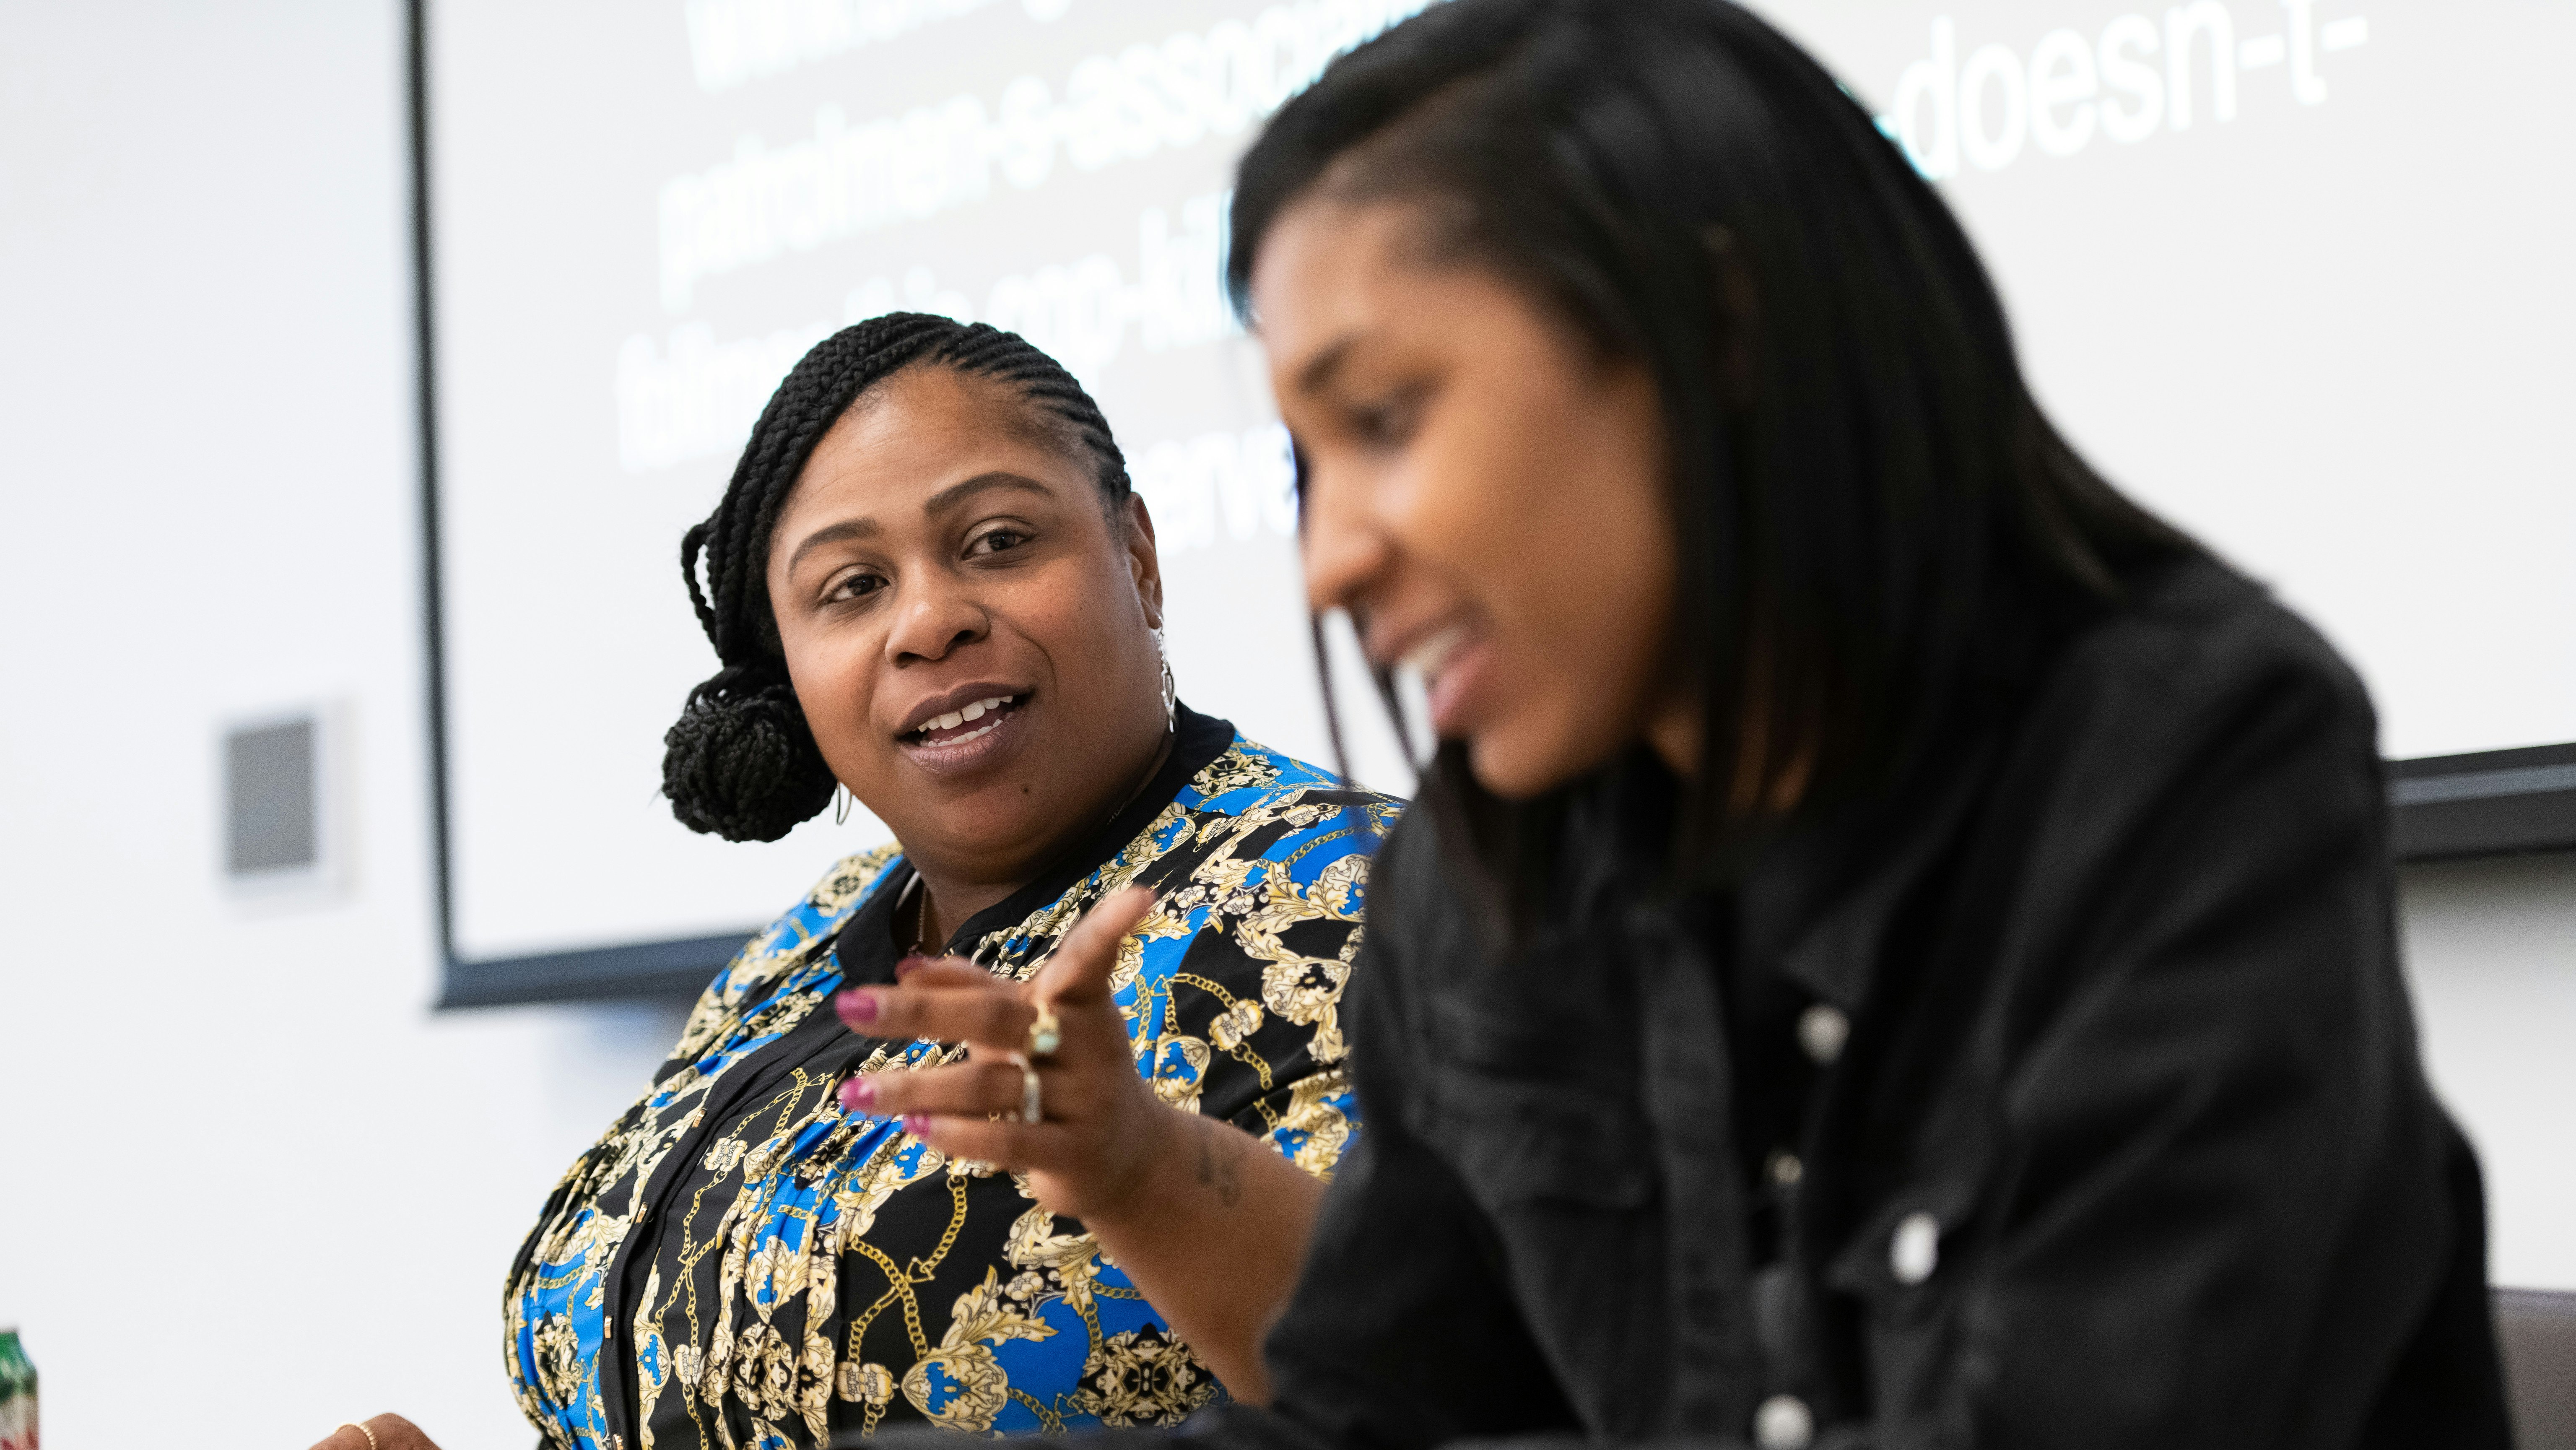 Two women speak on a panel.